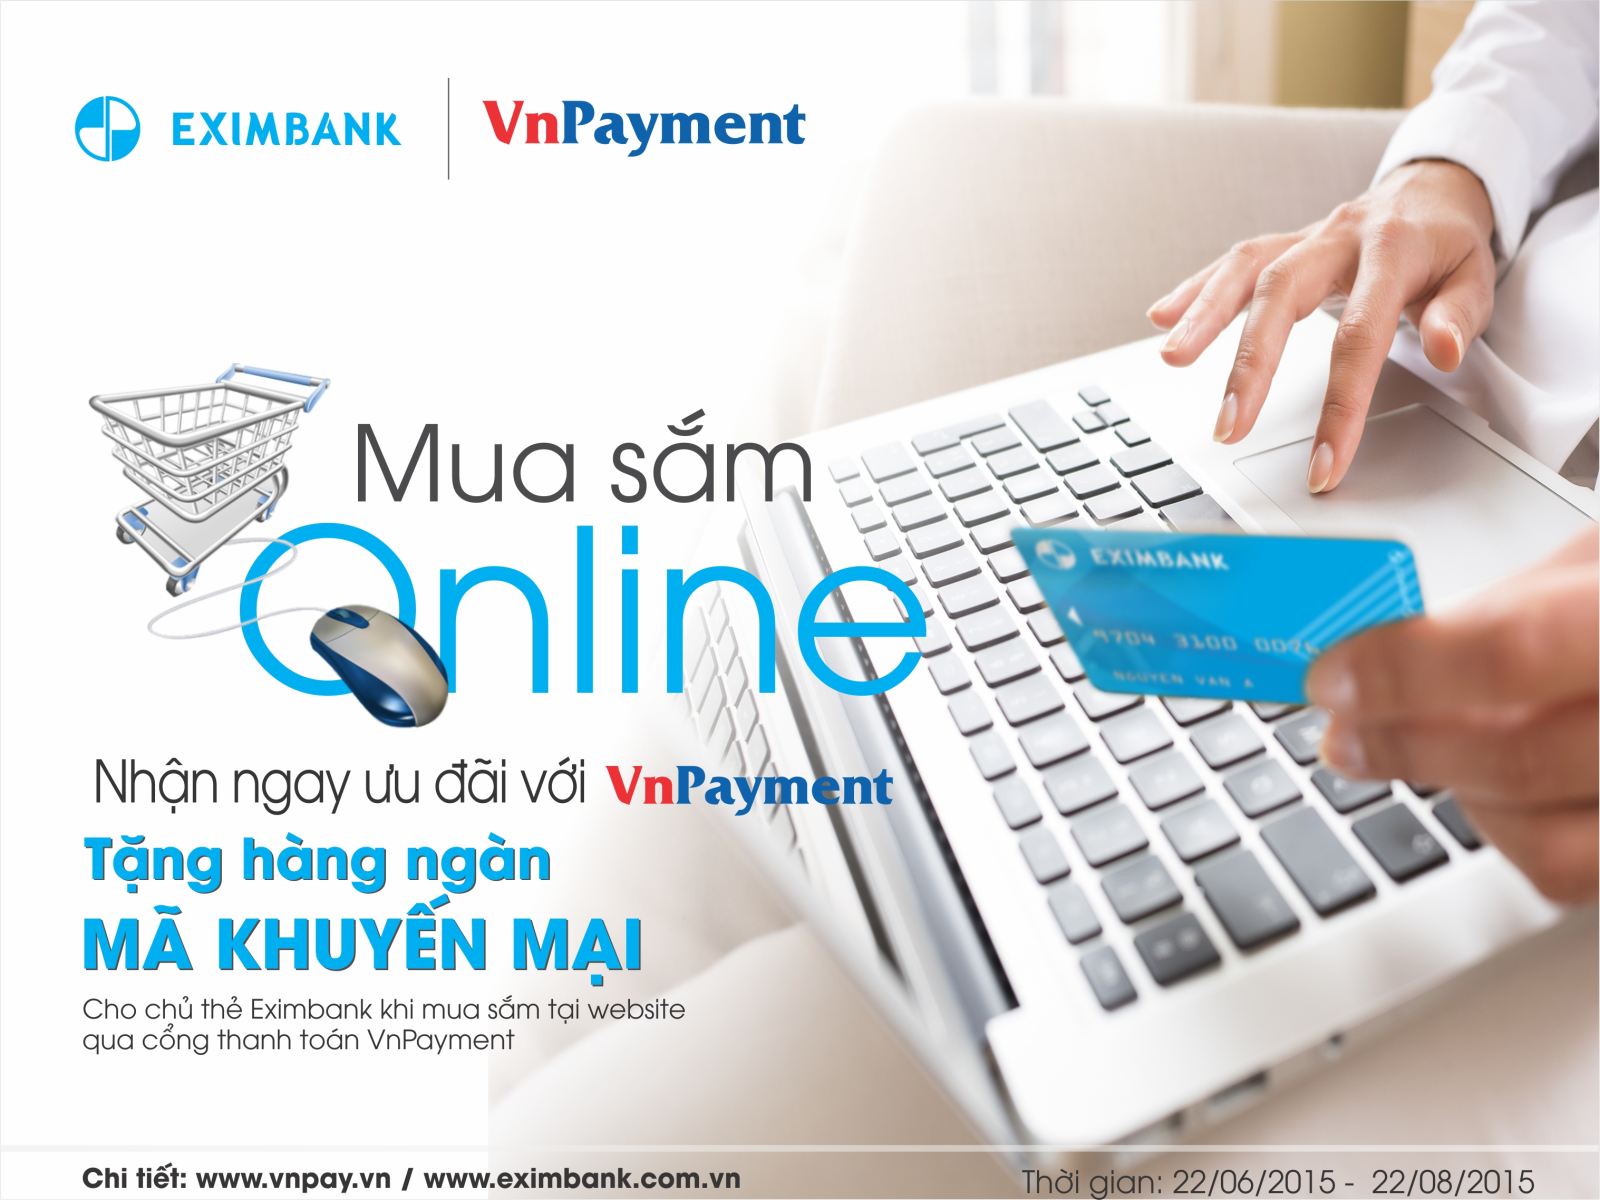 Mua sắm Online, nhận ngay ưu đãi với VNPAY cùng Eximbank